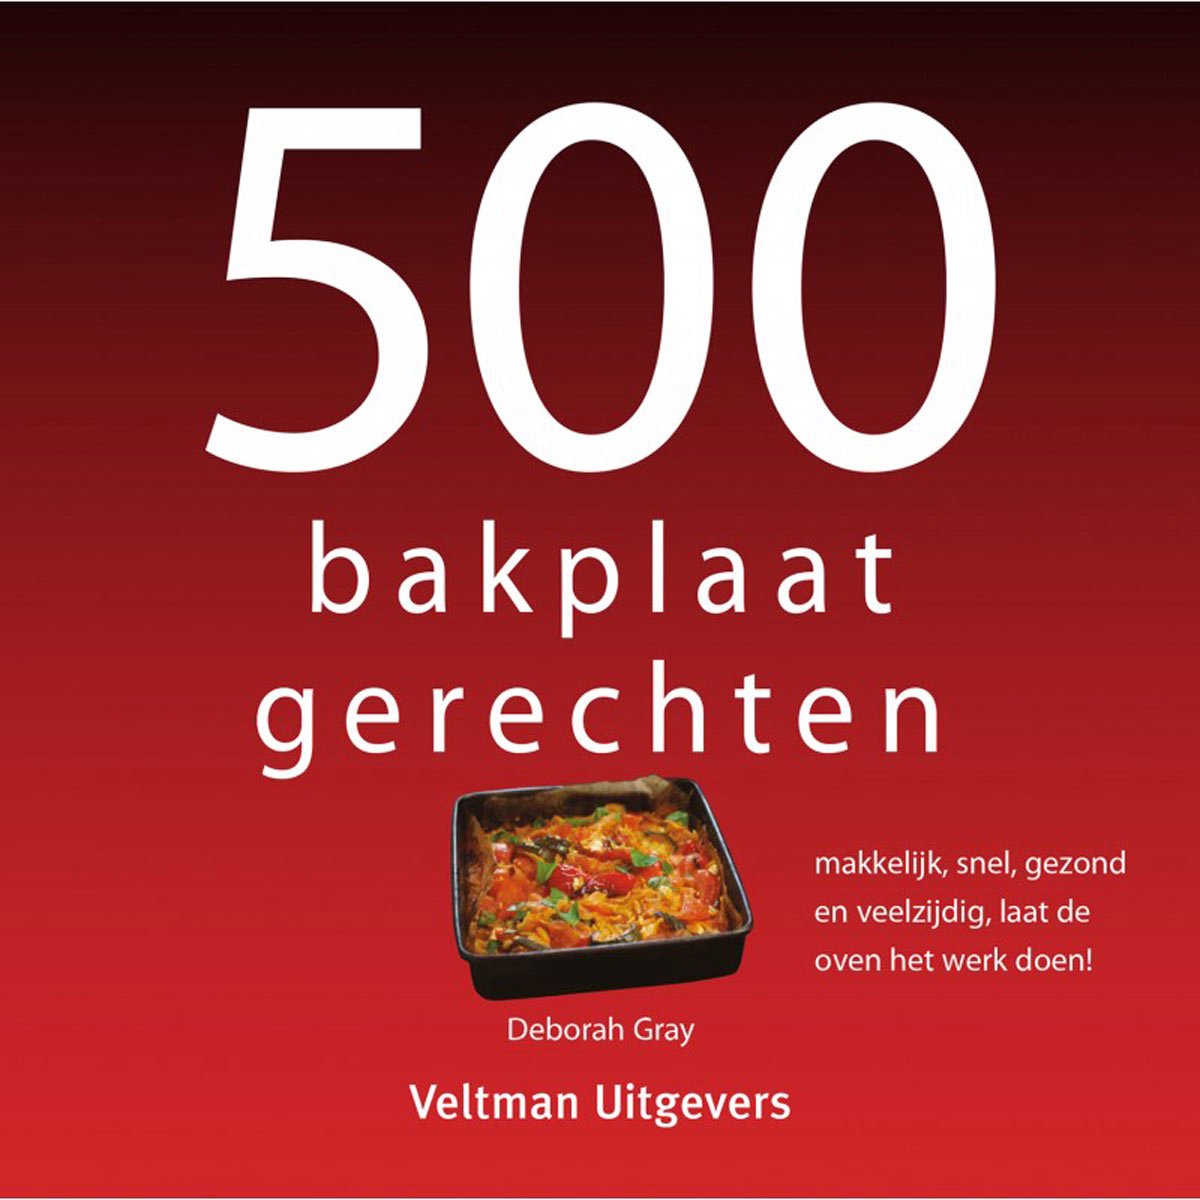 500-serie - 500 bakplaatgerechten